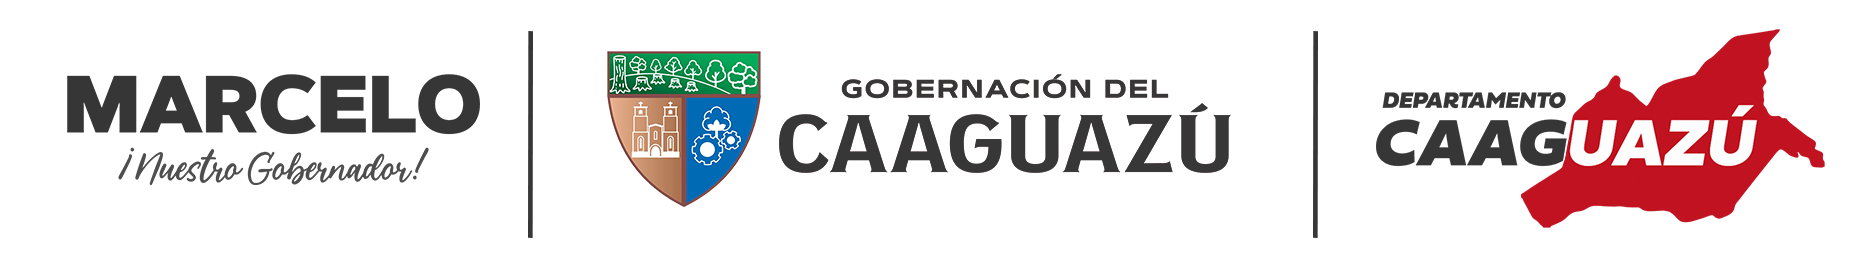 Departamento de Caaguazú 